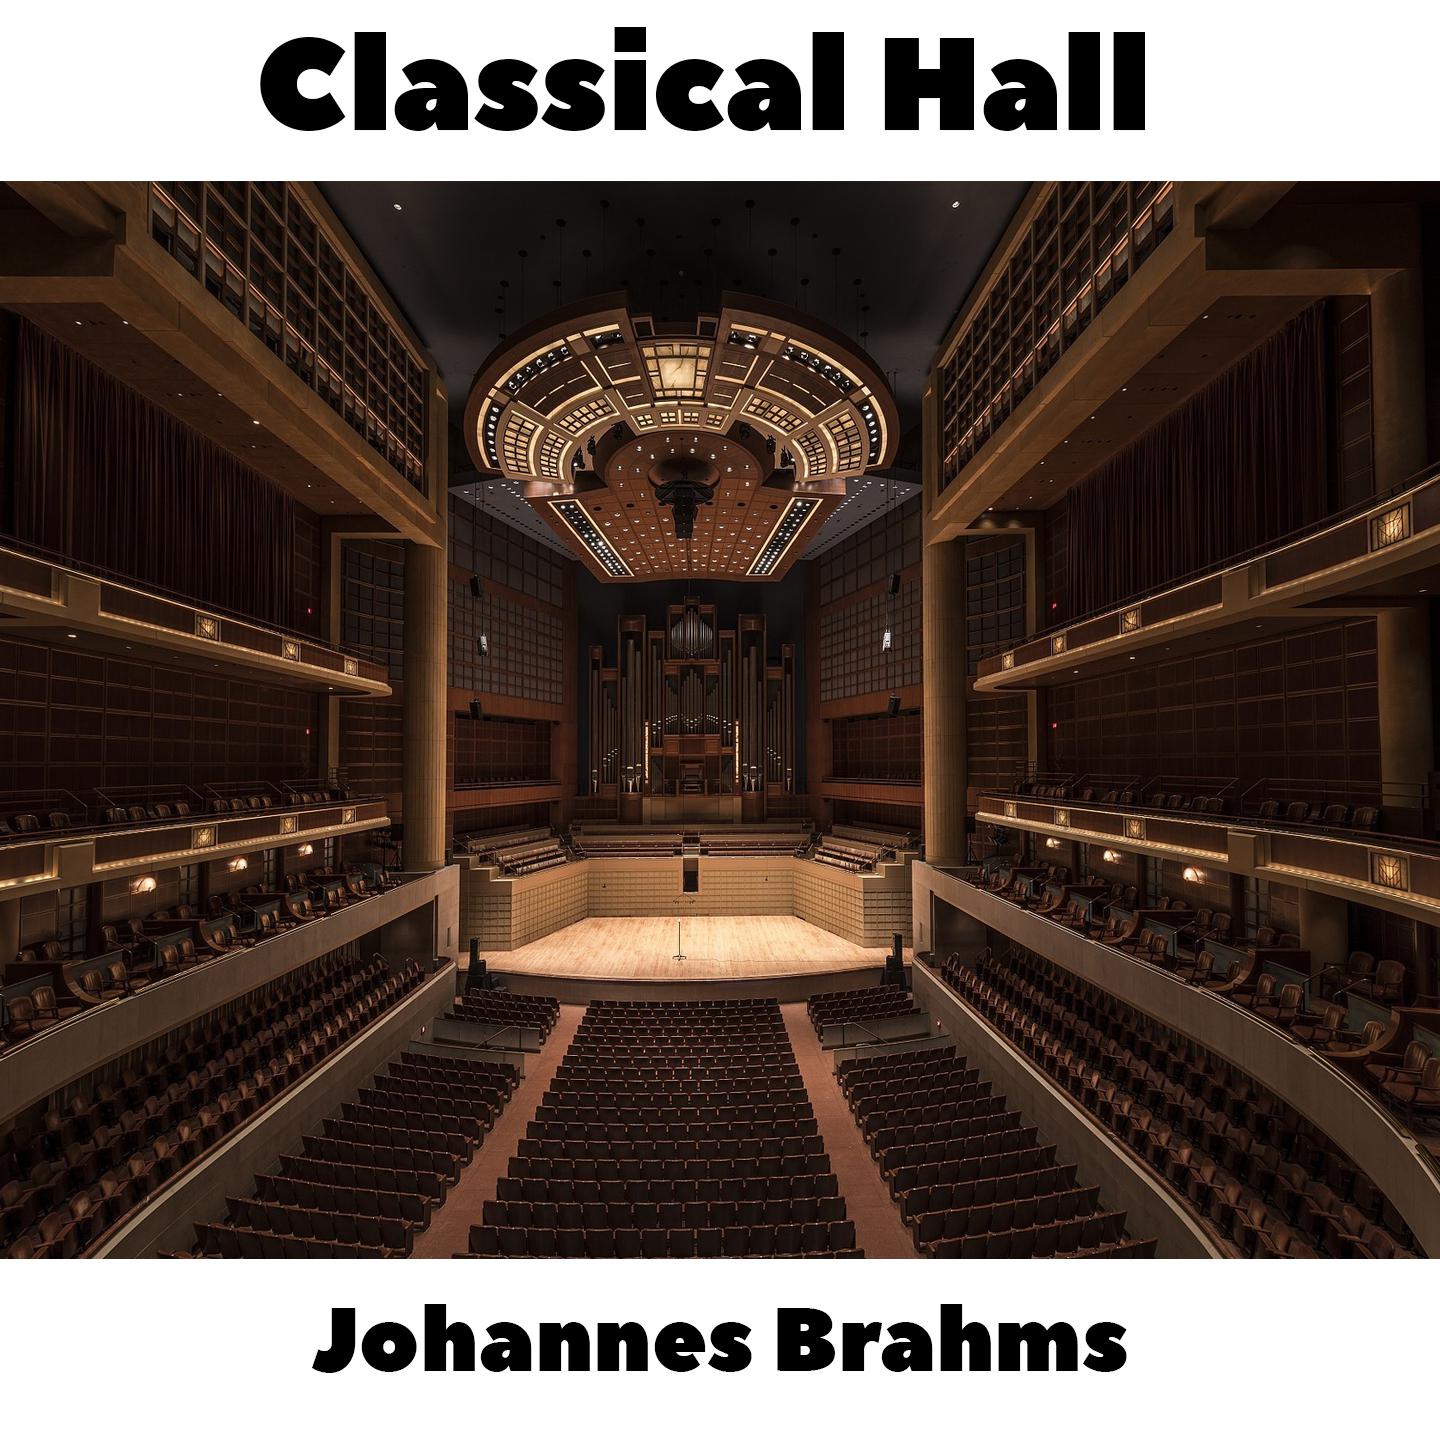 Johannes Brahms -  16 Waltzes, Op.39 - No.5 in E